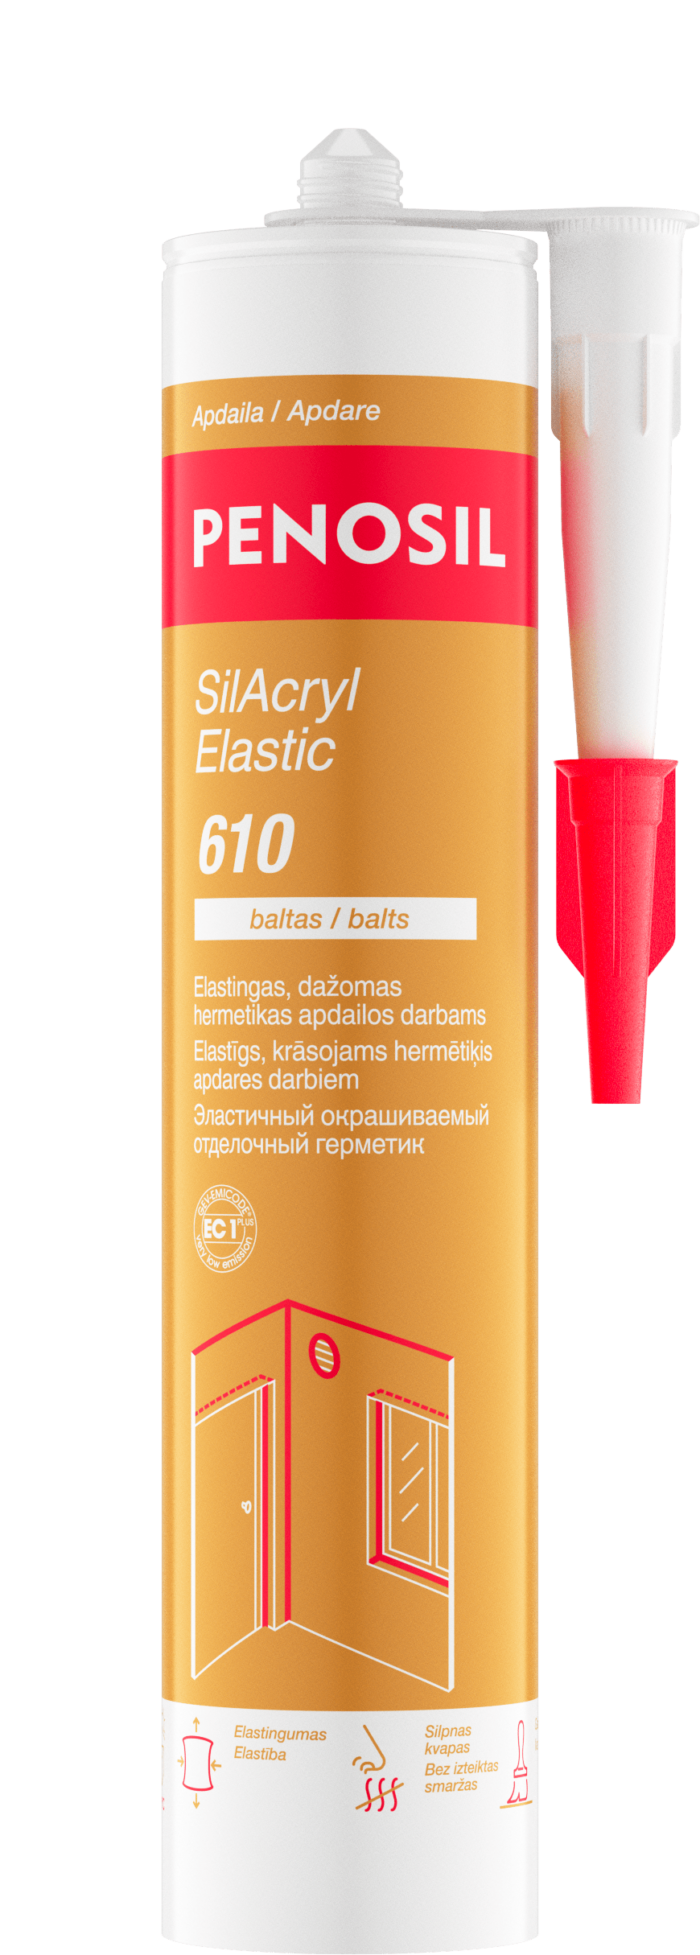 PENOSIL SilAcryl Elastic 610 elastingas dažomas hermetikas